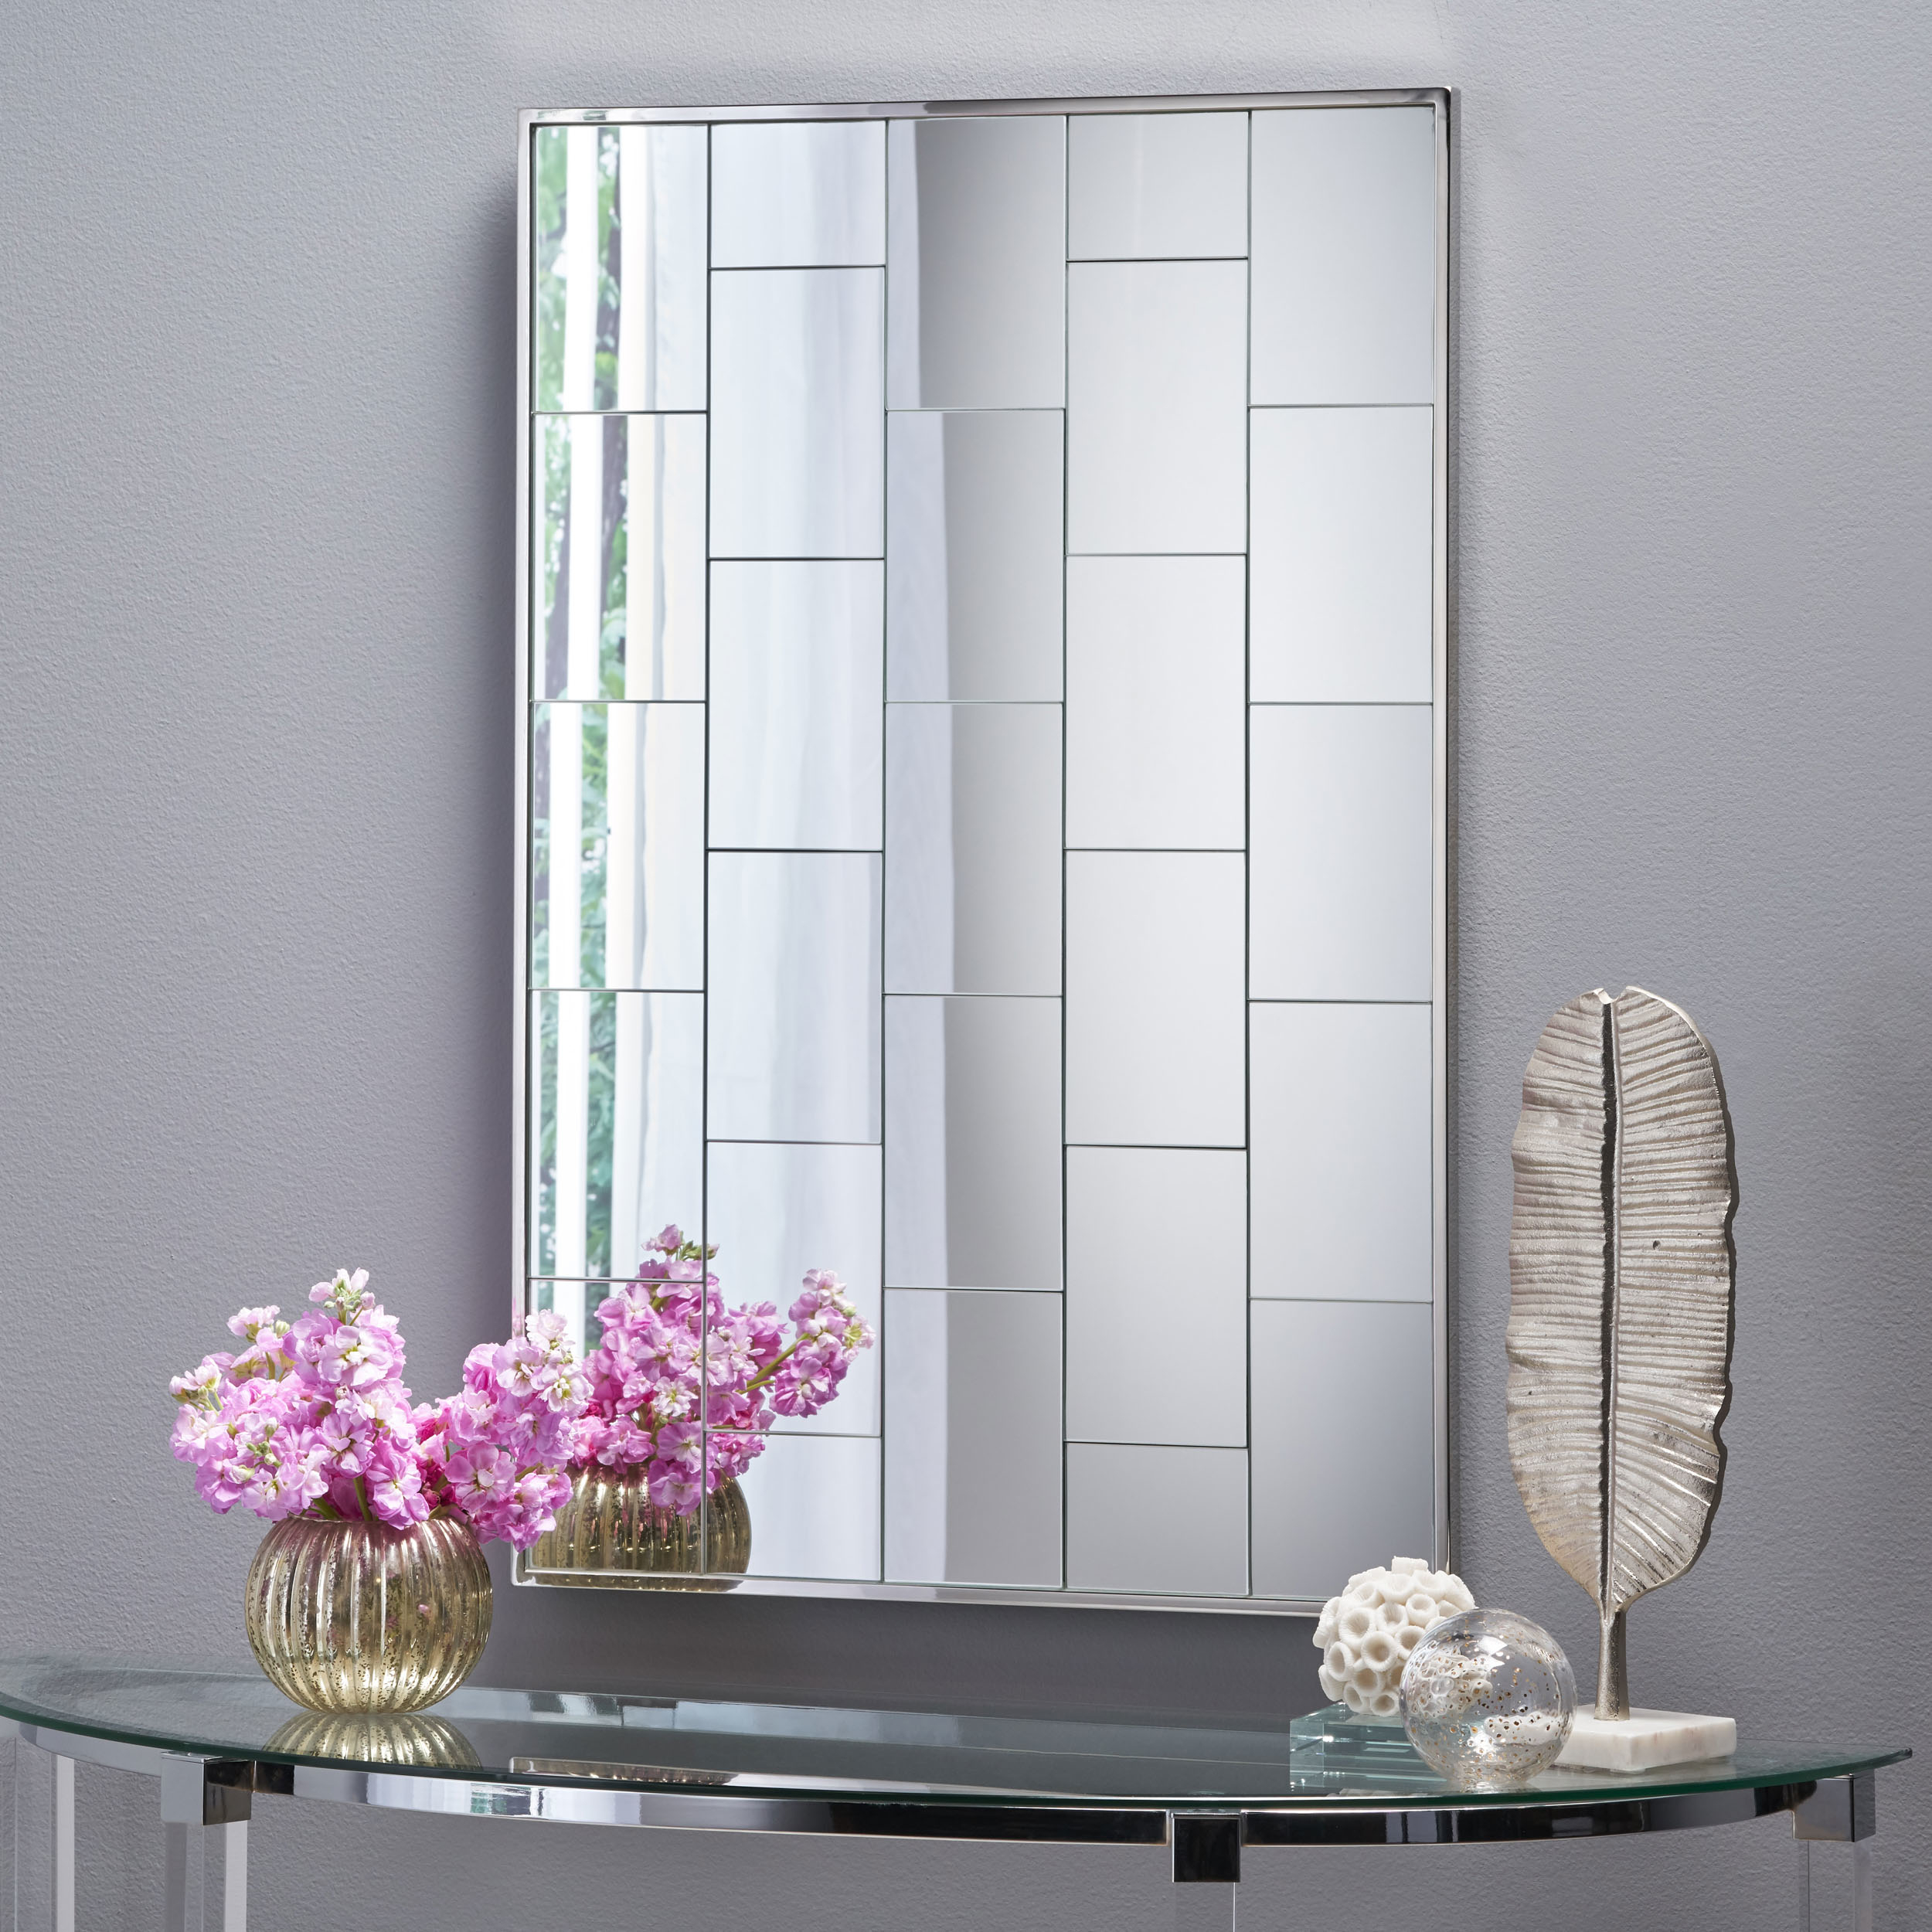 Sade Glam Brick Patterned Wall Mirror